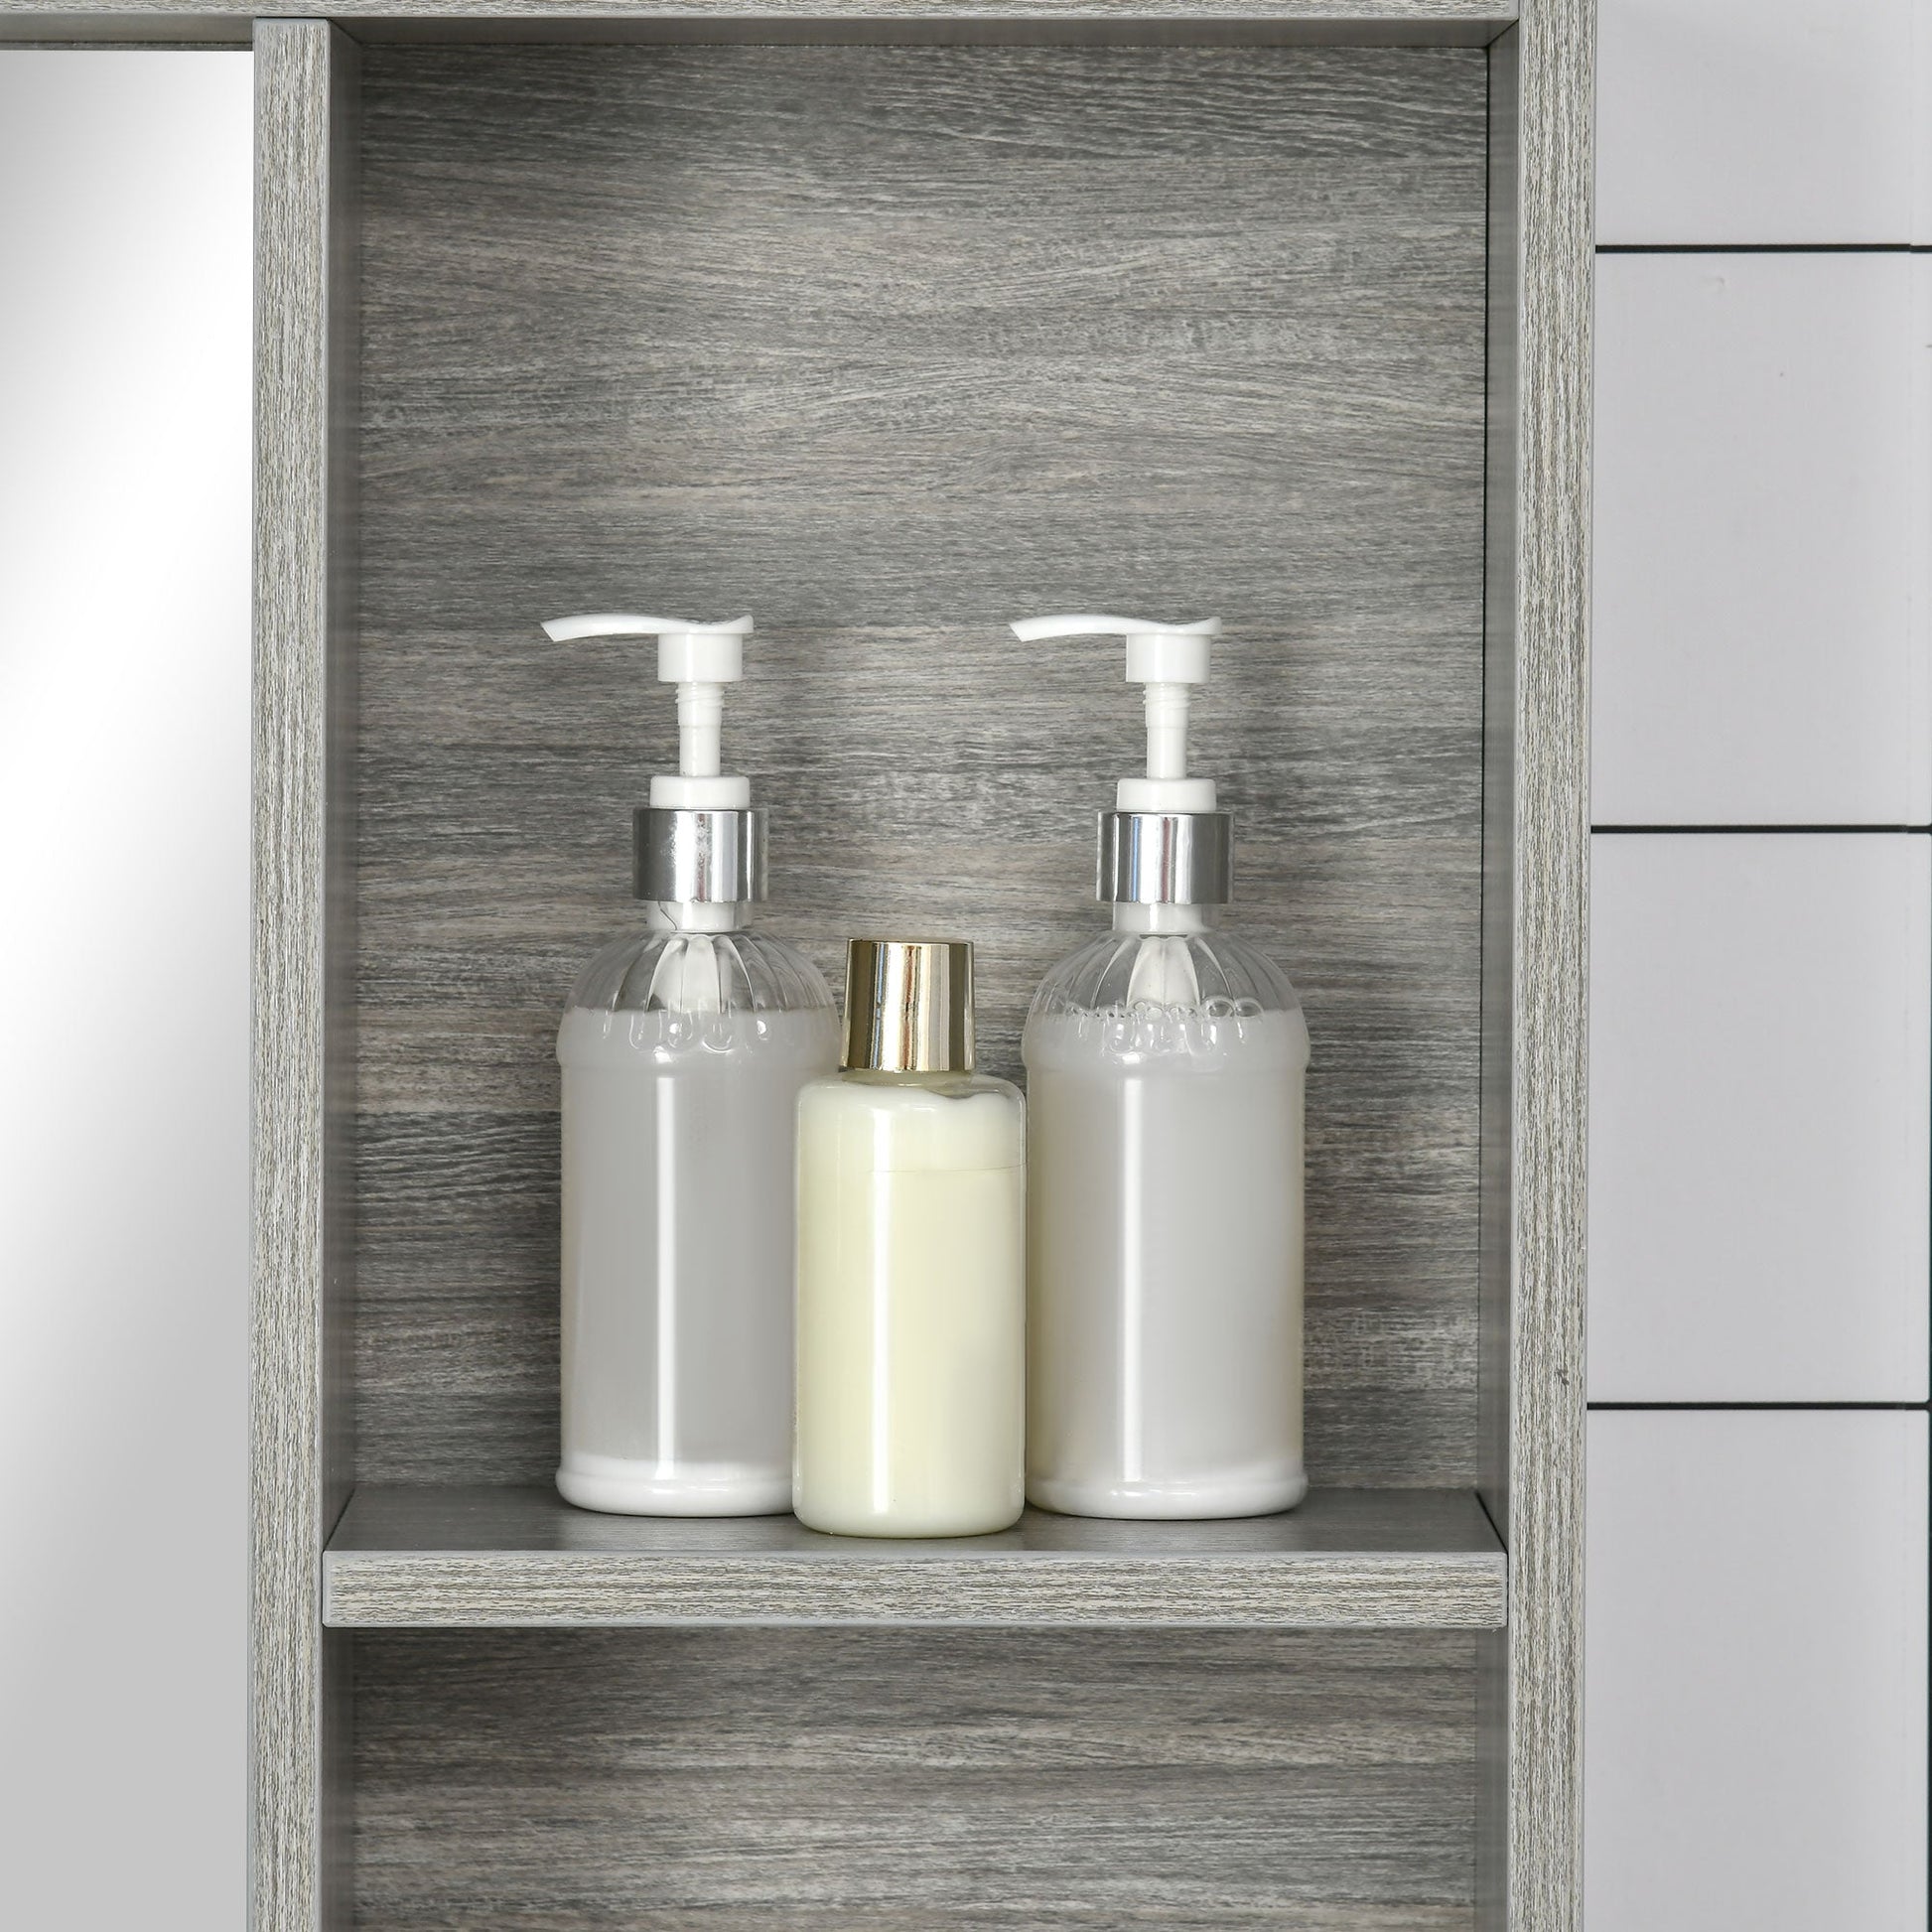 31.5 Inch x 25.5 Inch Medicine Cabinet with Mirror, 2-Tier Storage Shelf, Wall Mounted Bathroom Mirror Cabinet, Gray - Gallery Canada